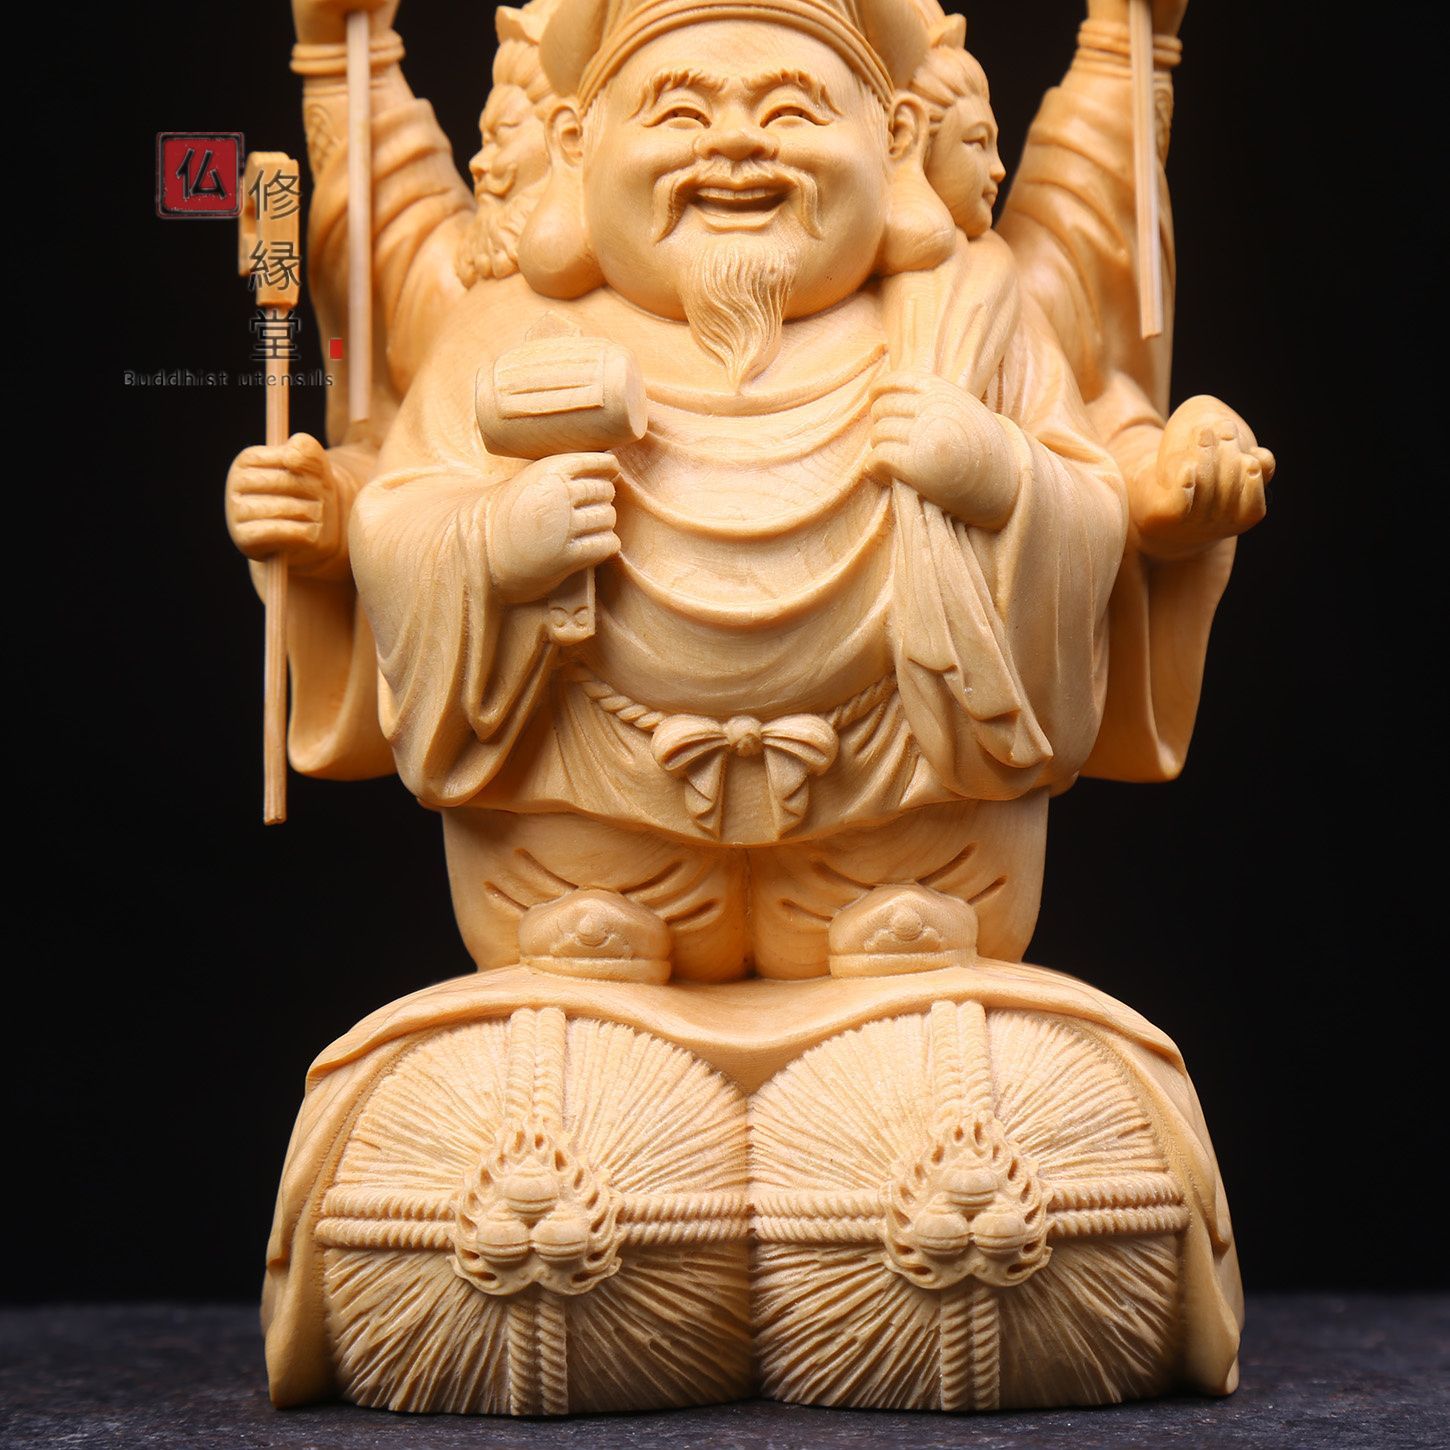 特注製作木彫仏像 福神 三面大黒天立像 財神 彩繪 本金 切金 置物 彫刻工芸品 仏像